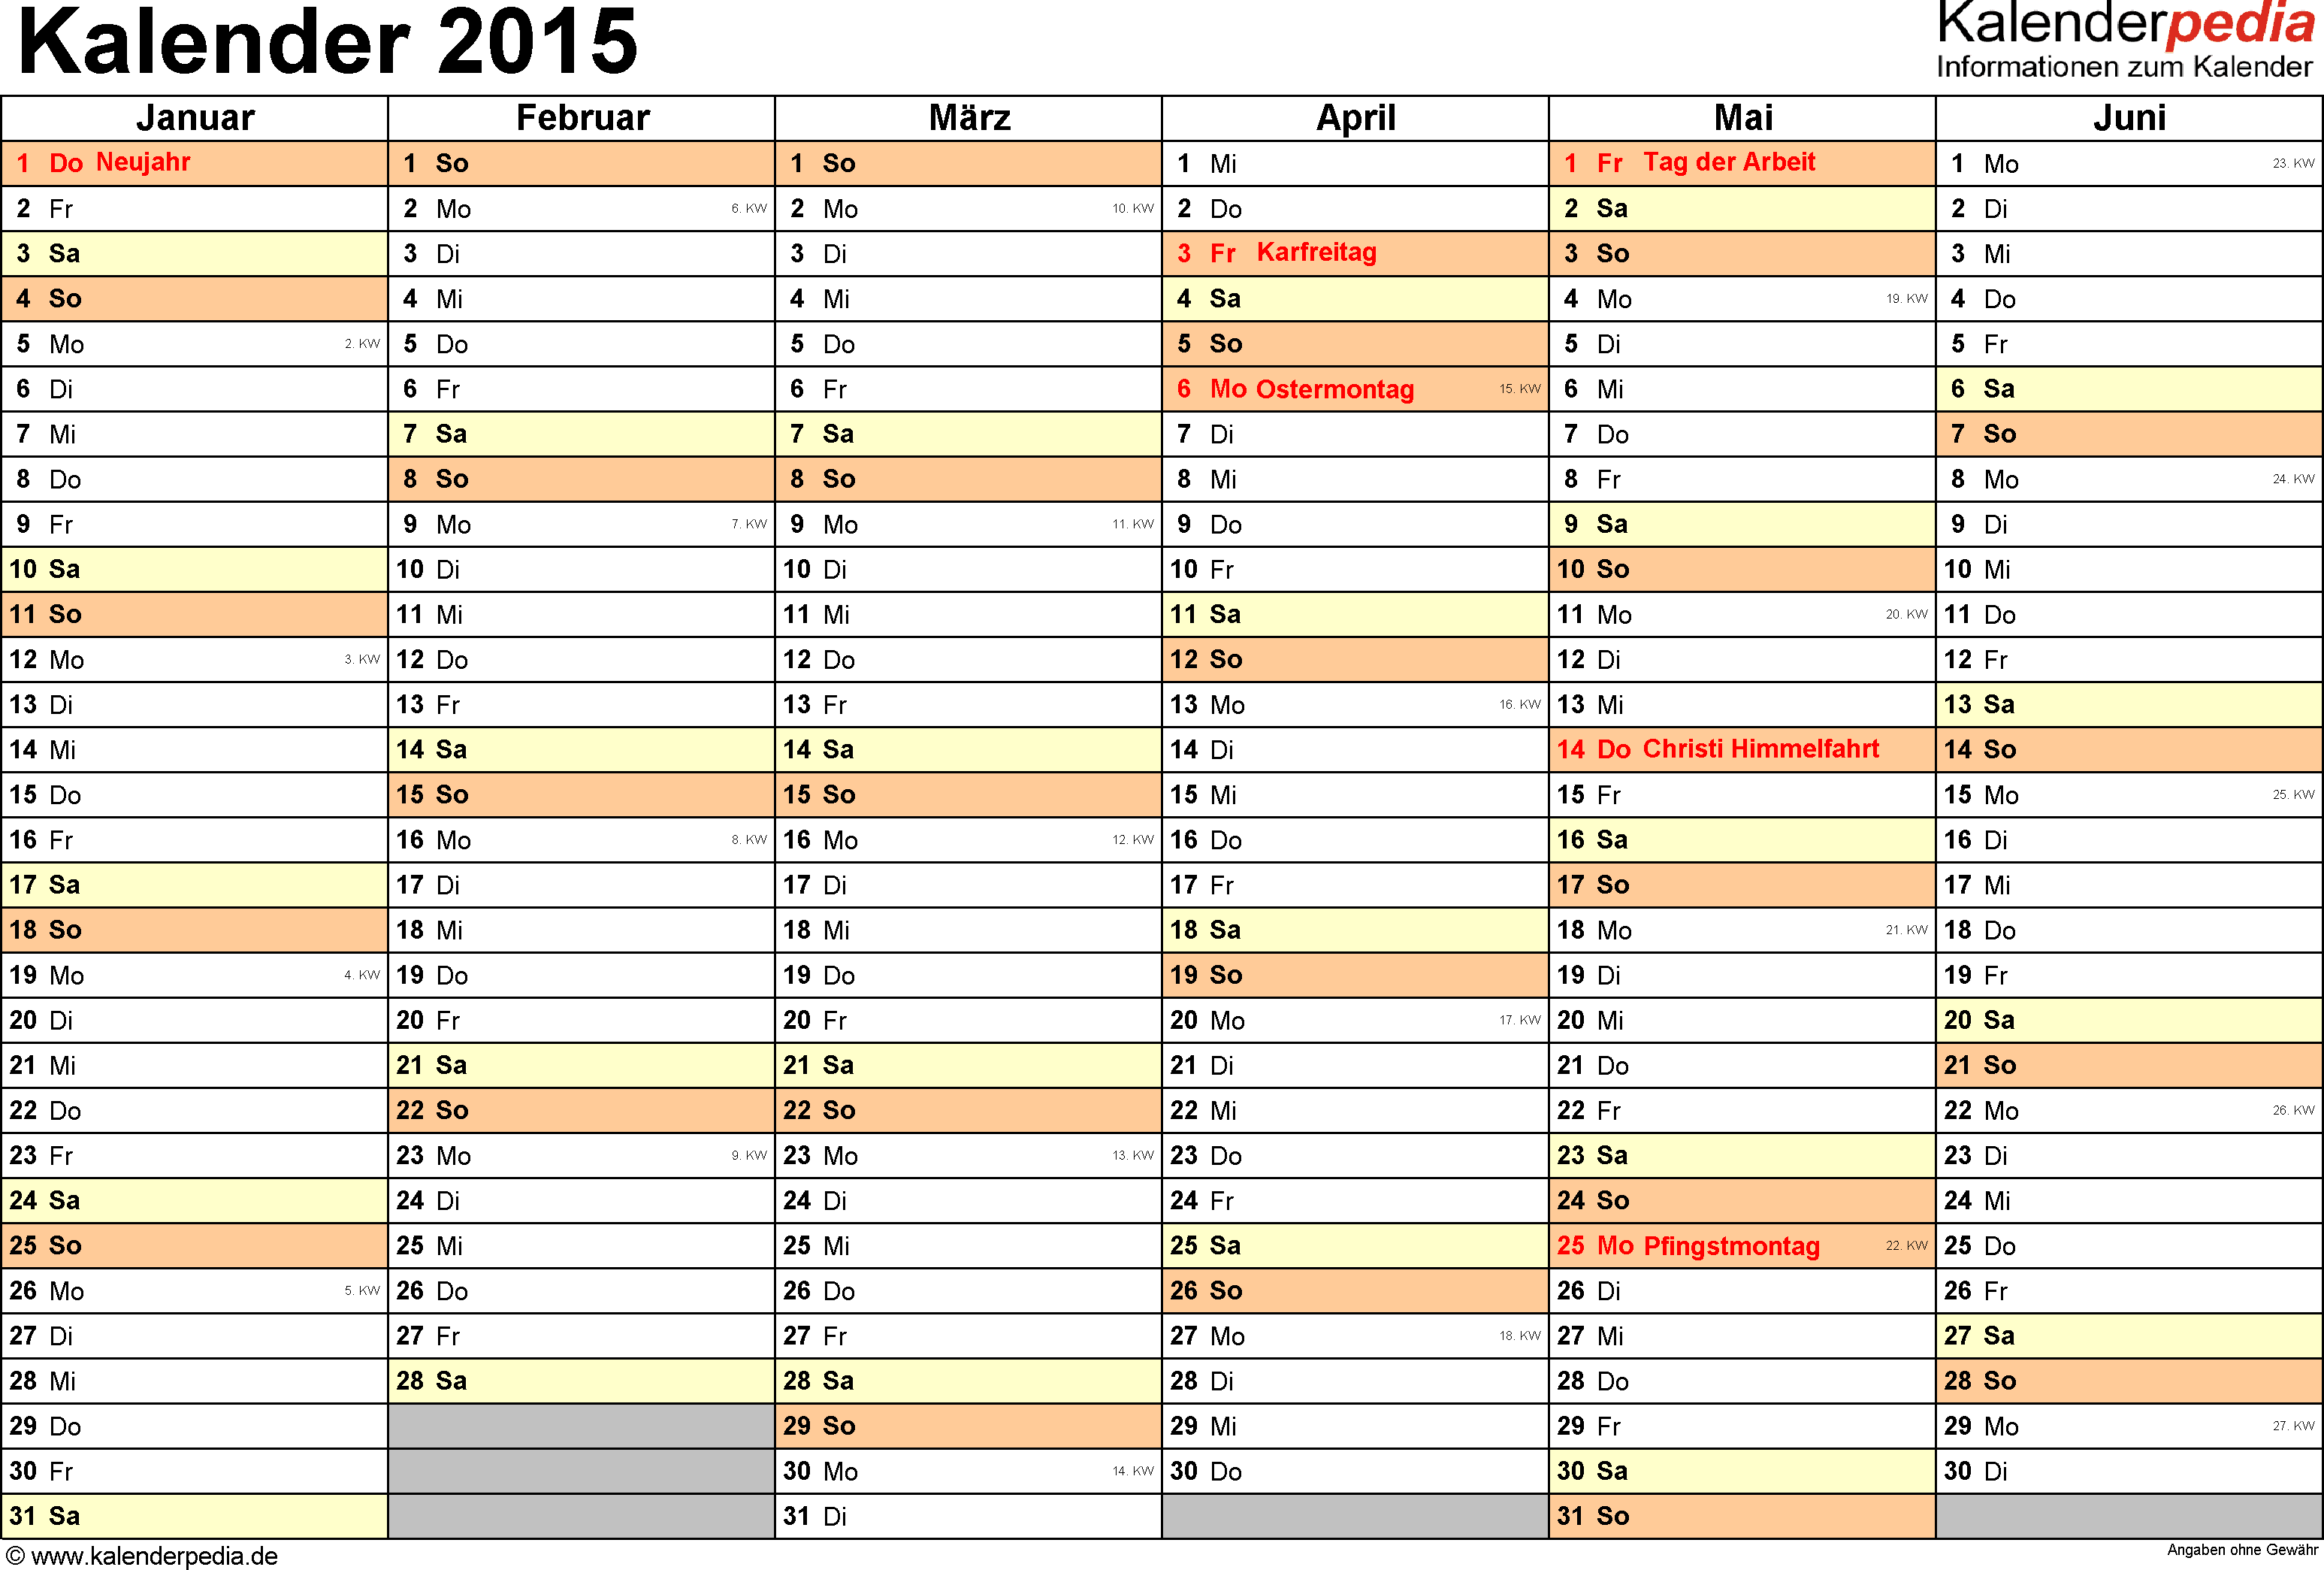 Kalendarium 2015